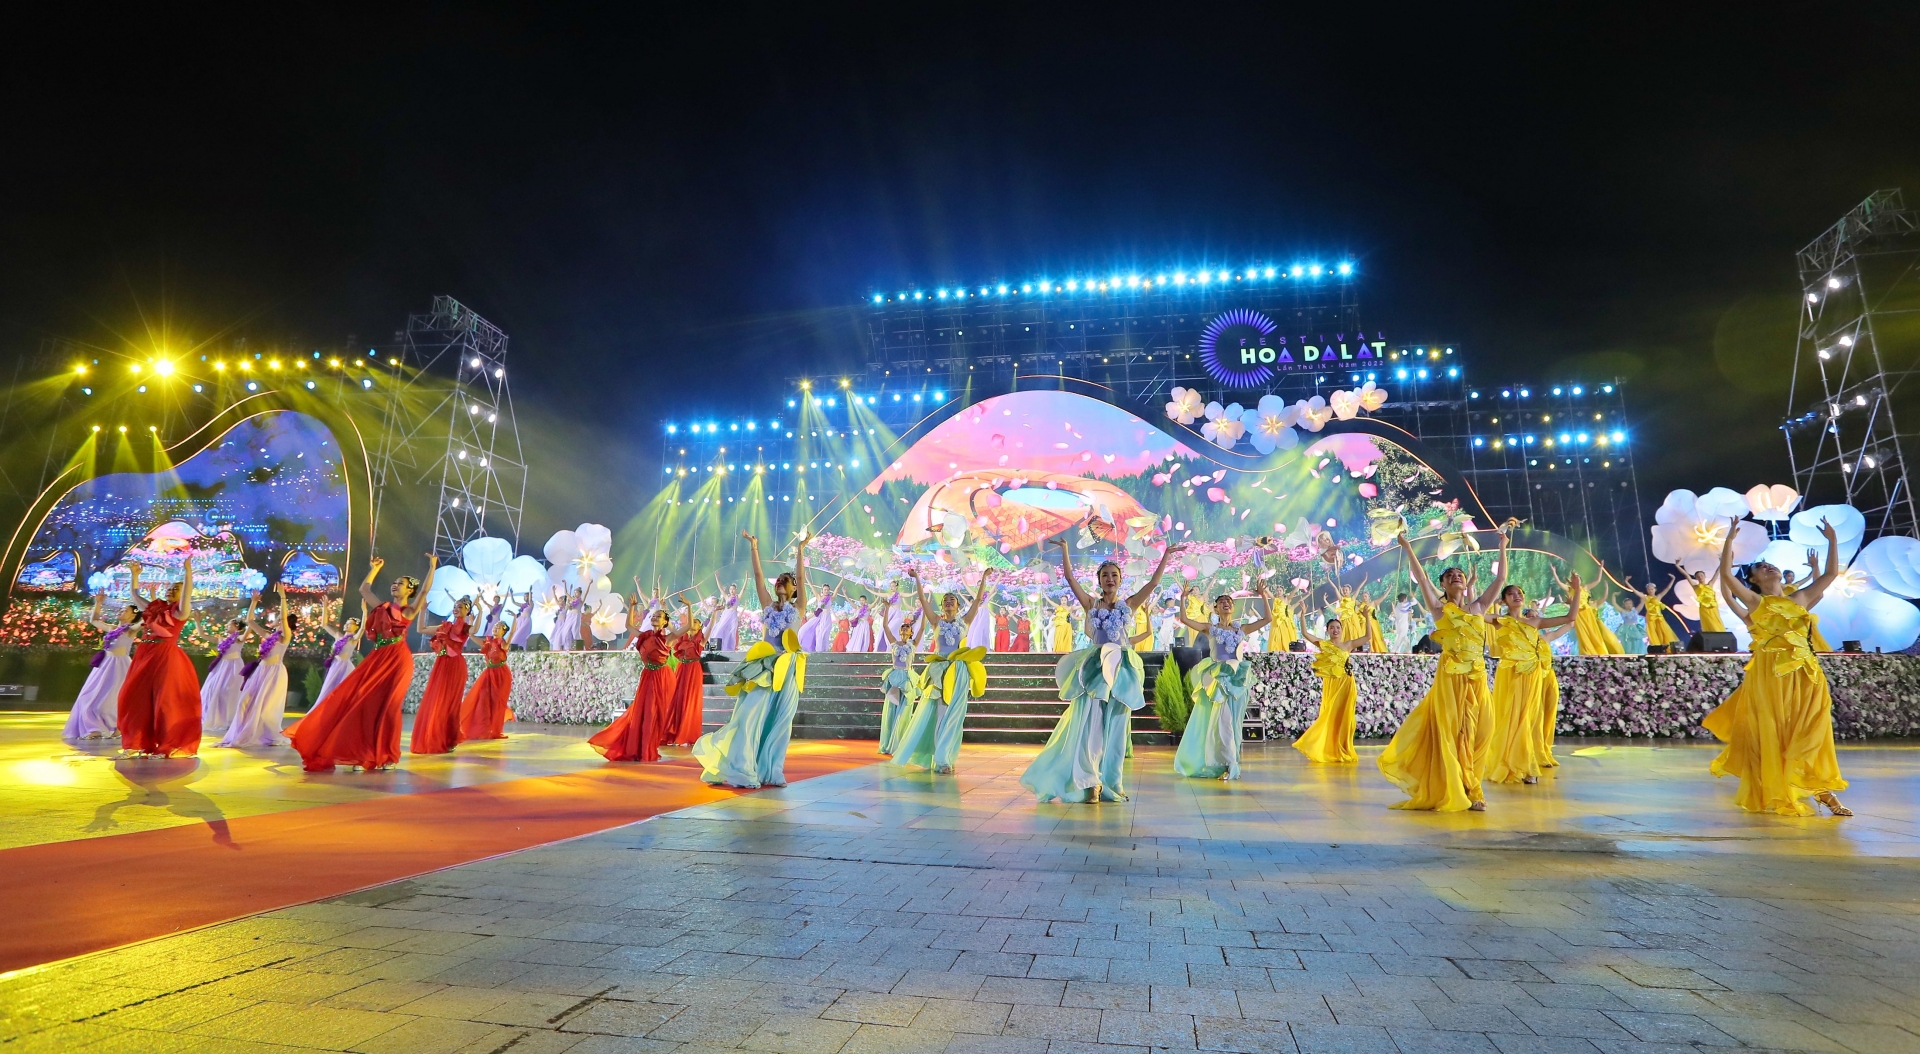 Festival Hoa Đà Lạt - sự kiện văn hóa, du lịch tầm cỡ quốc gia và đẳng cấp quốc tế từ lâu đã là thương hiệu của “Thành phố ngàn hoa” được nhiều du khách trong và ngoài nước quan tâm đặc biệt